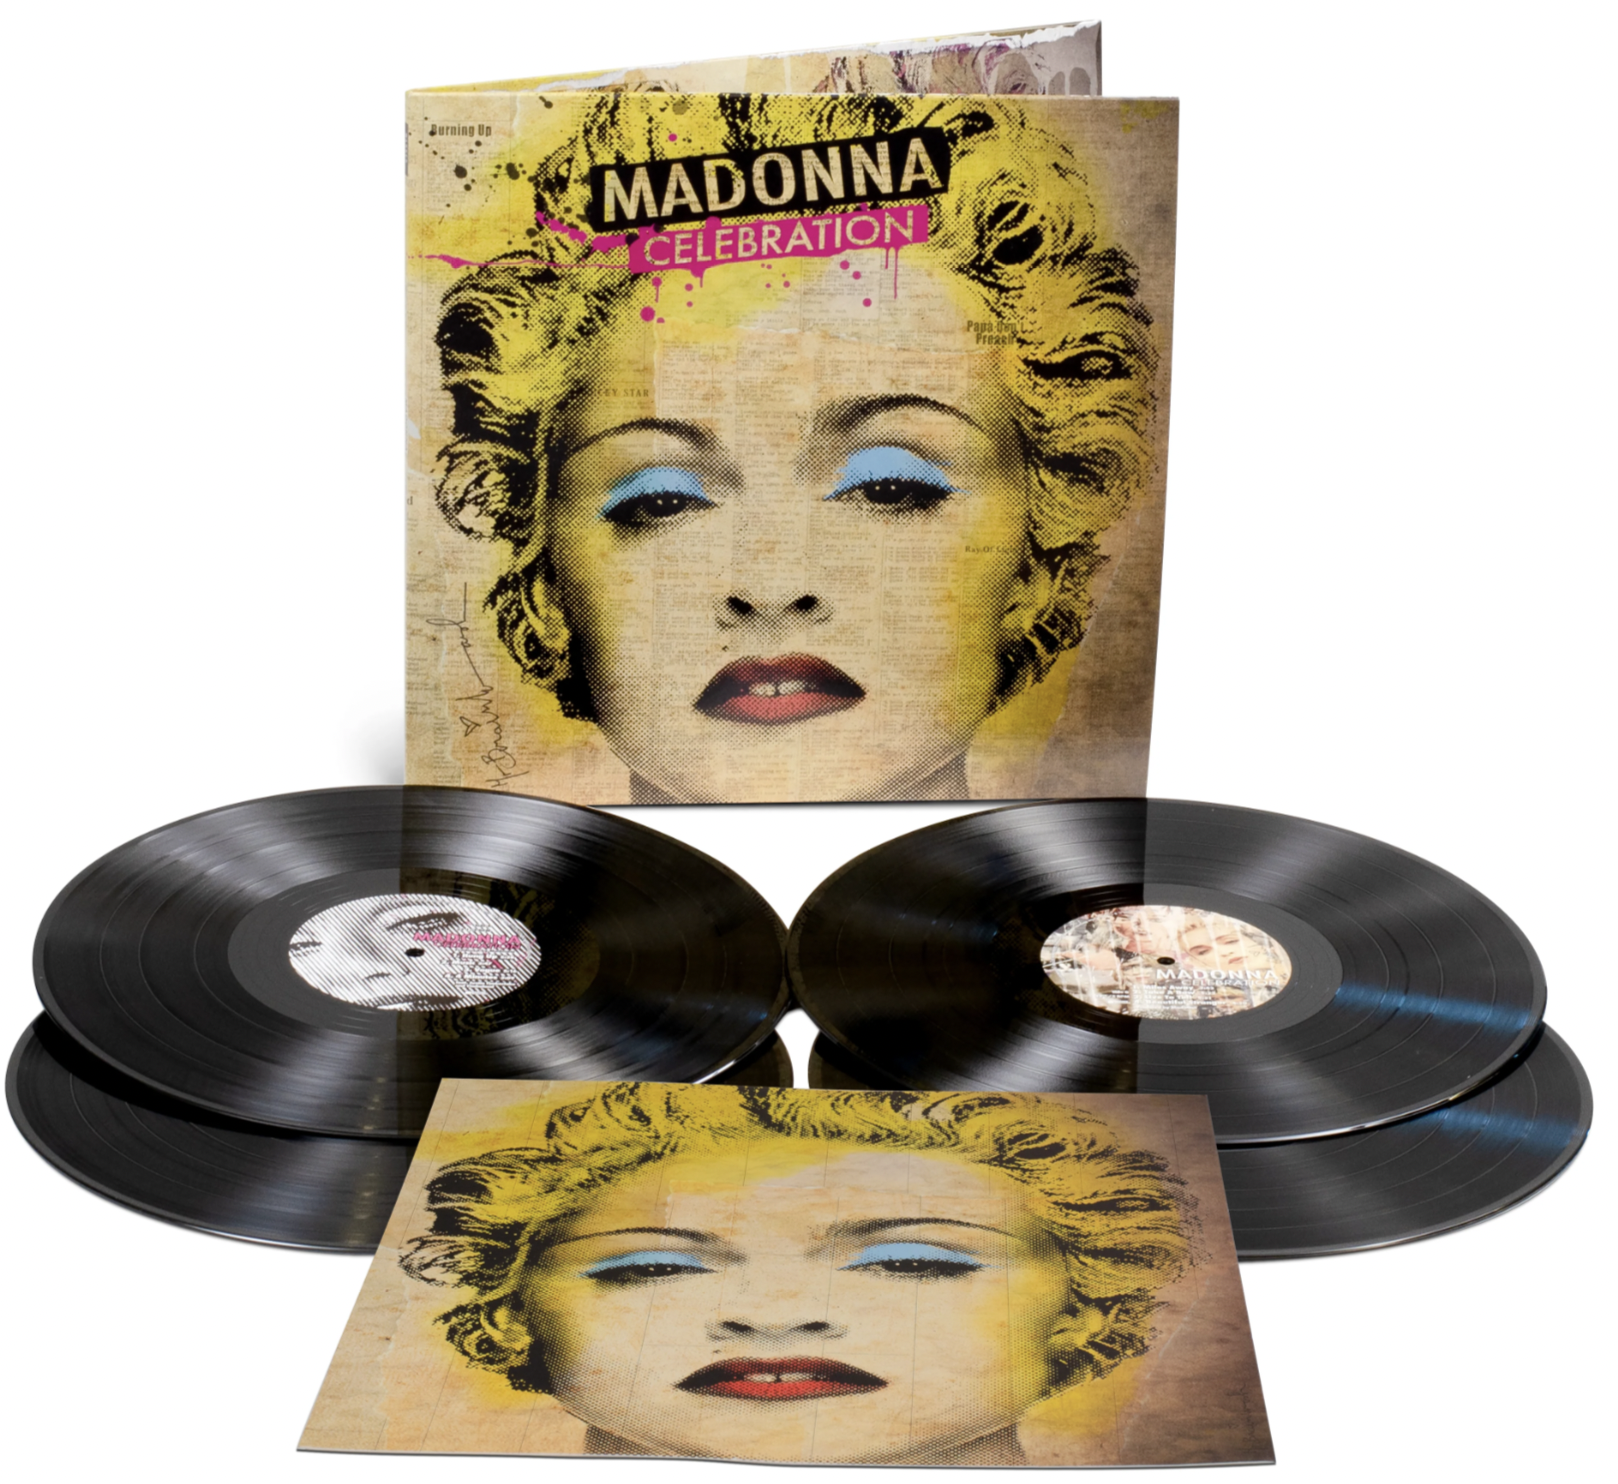 Visuel de la réédition, avec ce qui semble être la lithographie, en bas de l'image - store UK de Madonna